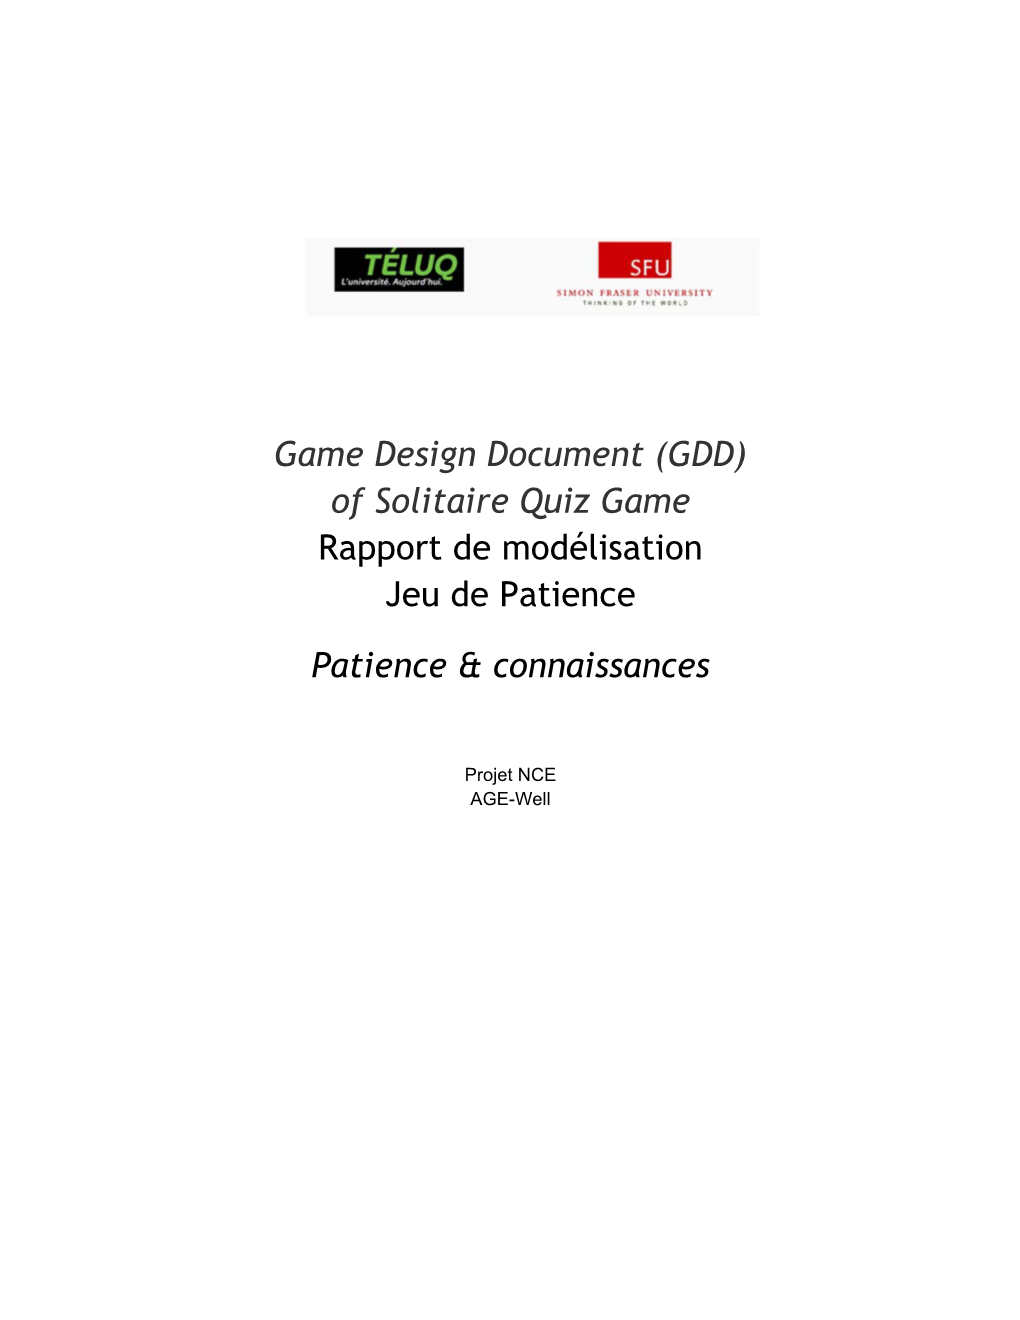 GDD) of Solitaire Quiz Game Rapport De Modélisation Jeu De Patience